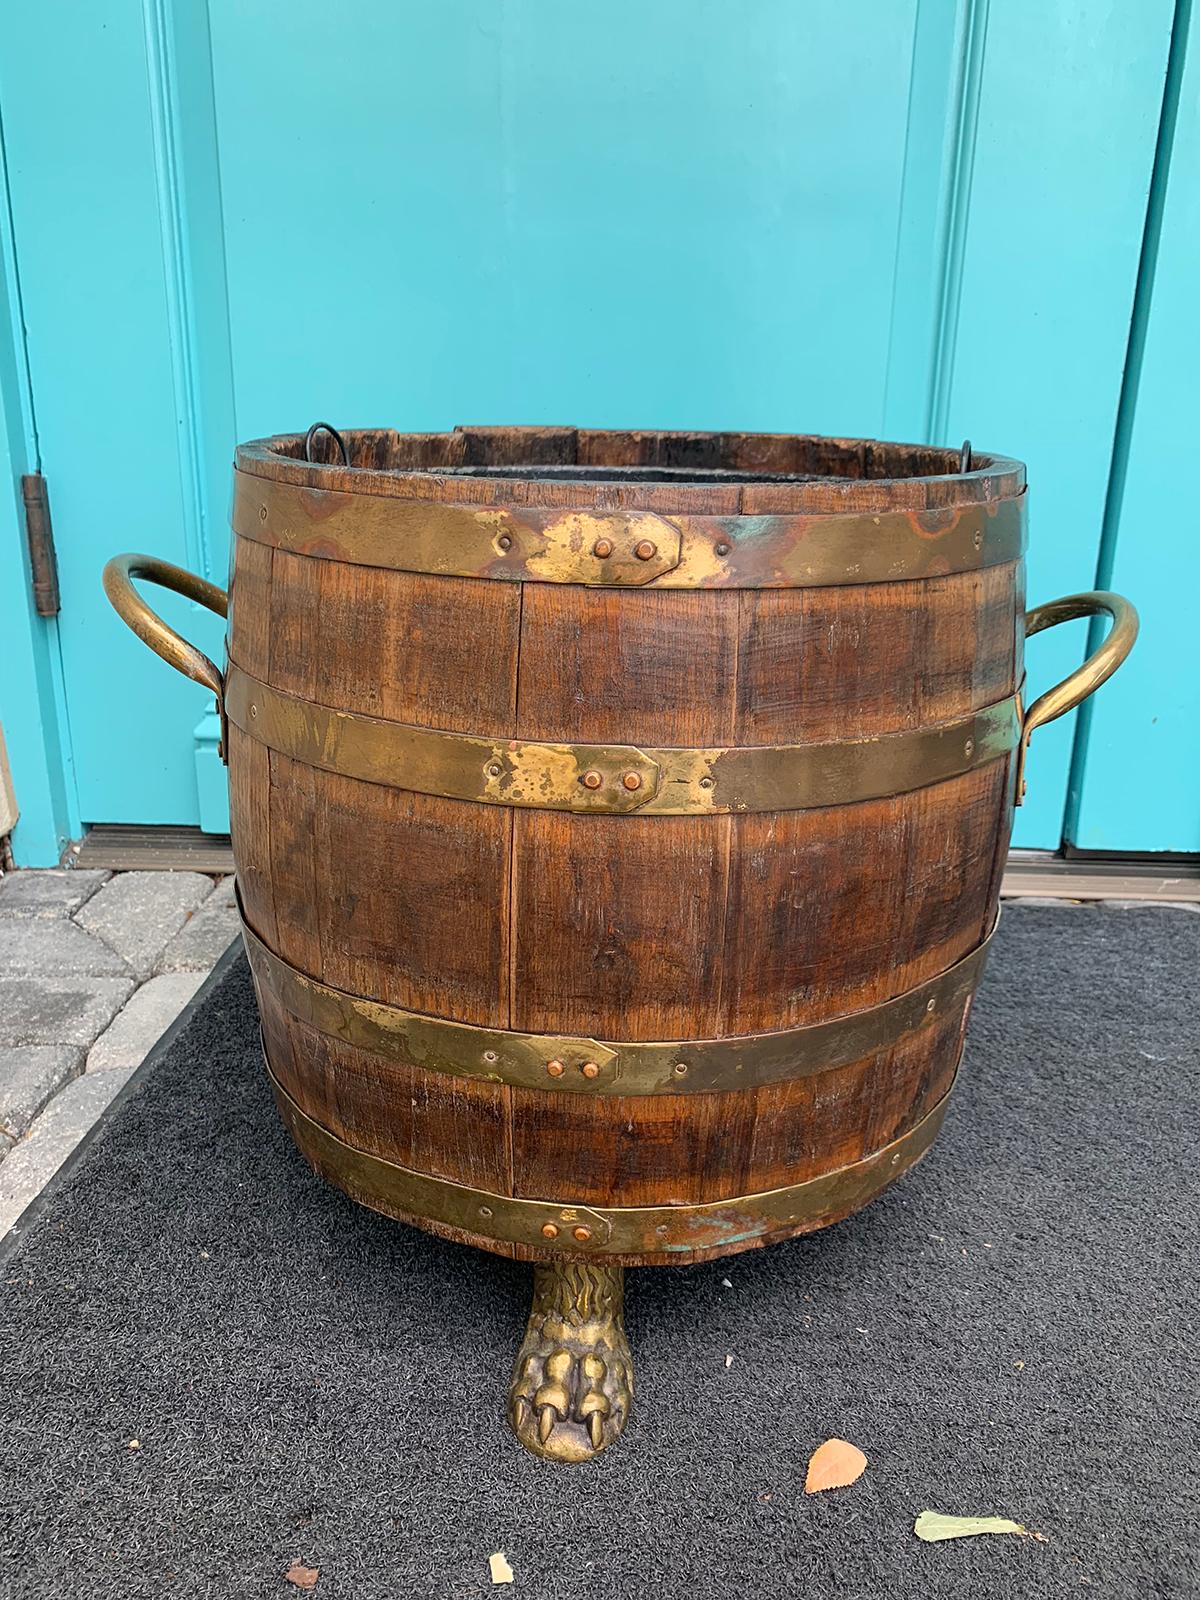 18th-19th century English brass bound wooden bucket
Bucket: 15.5